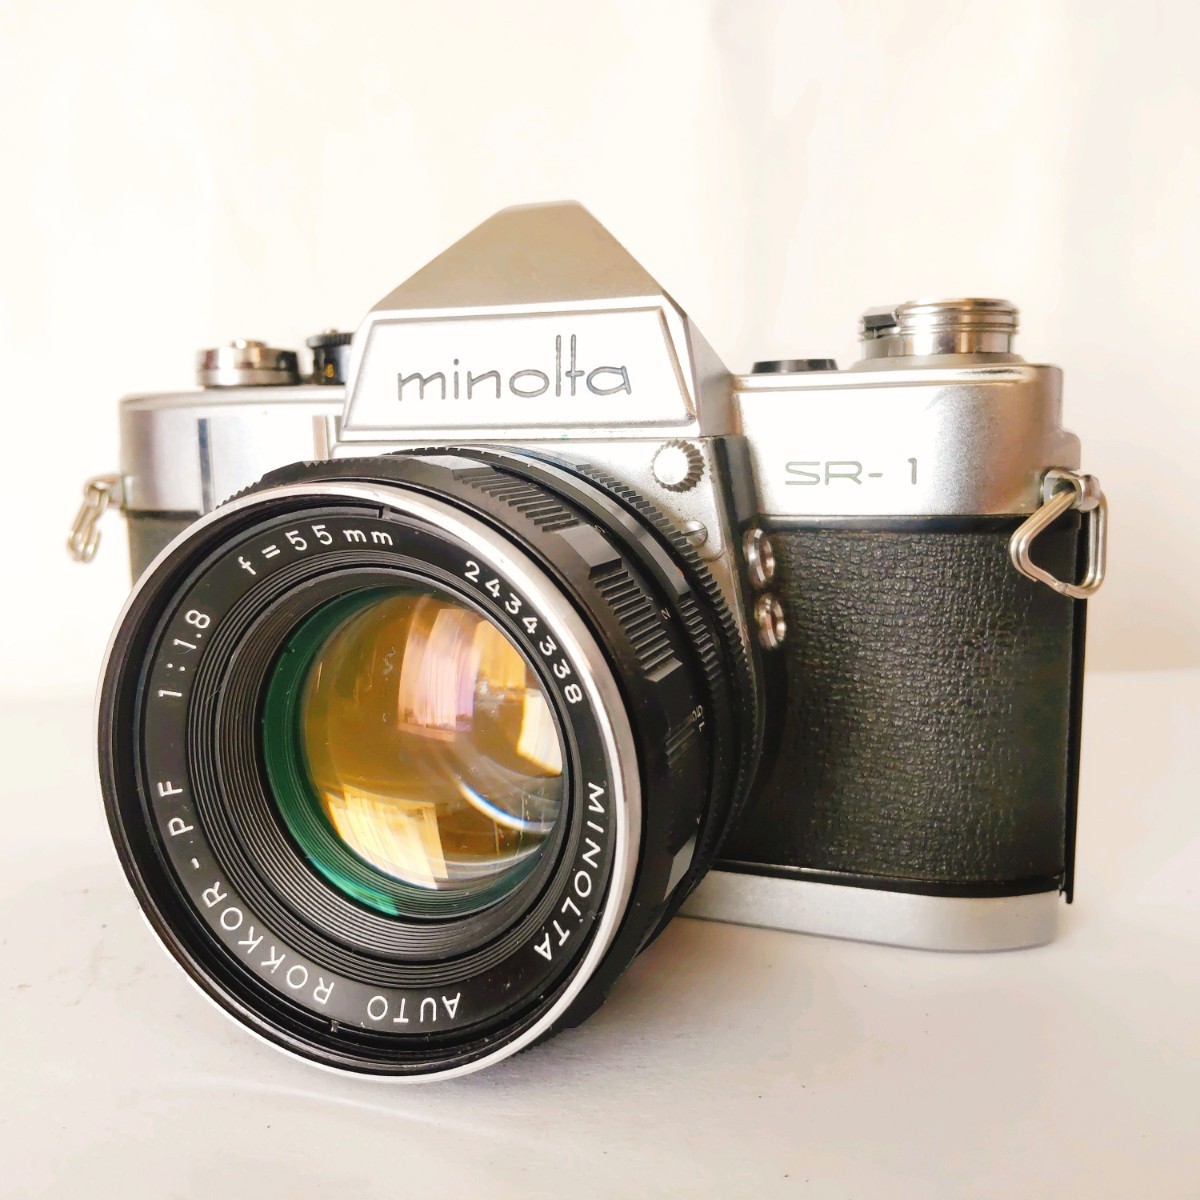 ★良品★ MINOLTA ミノルタ SR-1 MINOLTA AUTO ROKKOR PF 55mm f1.8 コンパクトフィルムカメラ